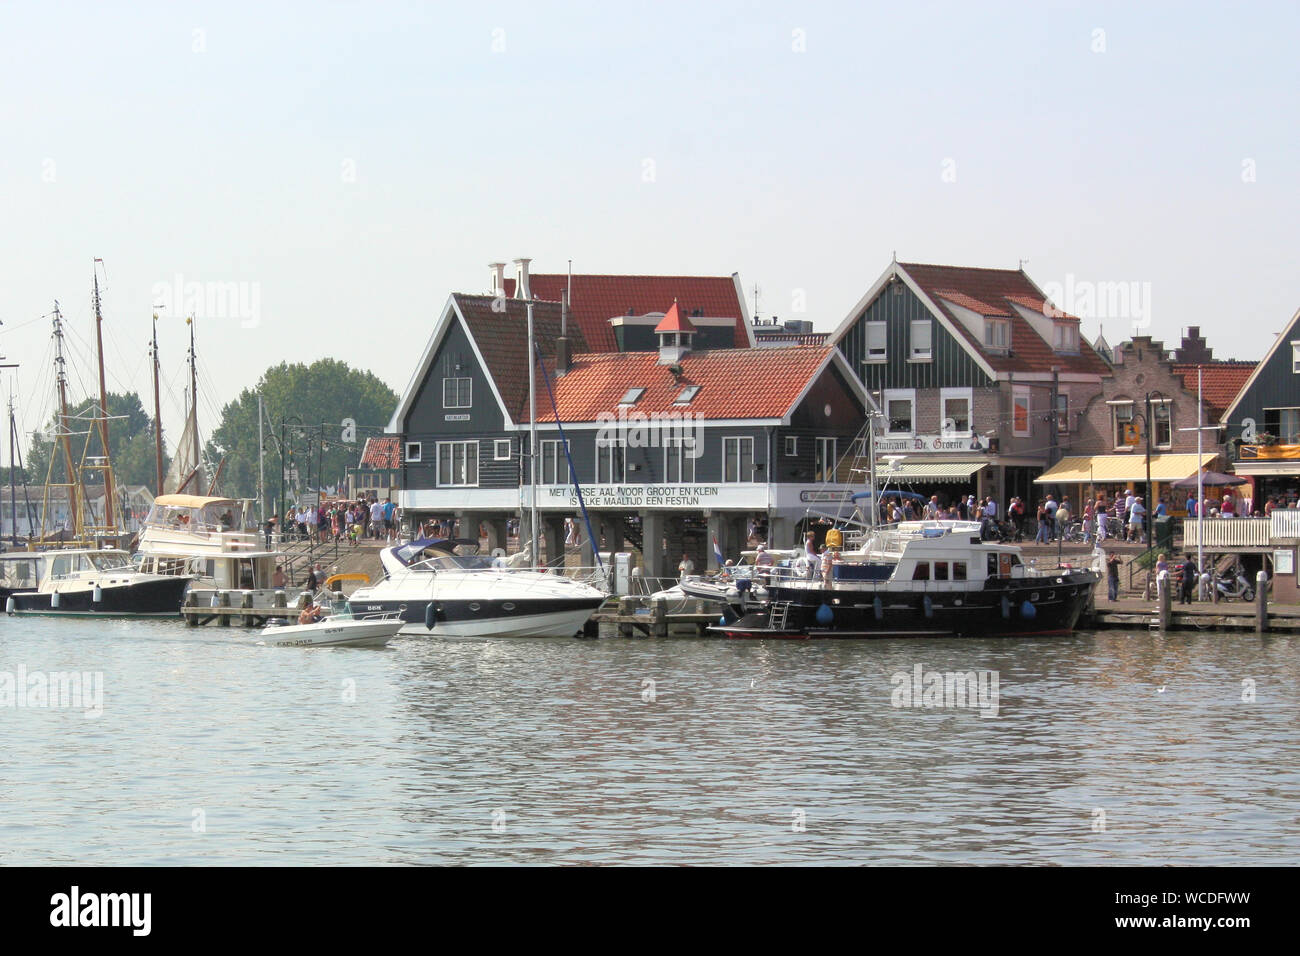 Das Fischerdorf Volendam ist gut - mit Piers, Boote und kleinen Häusern, Restaurants, Souvenirläden und Fotostudios erhalten. Stockfoto